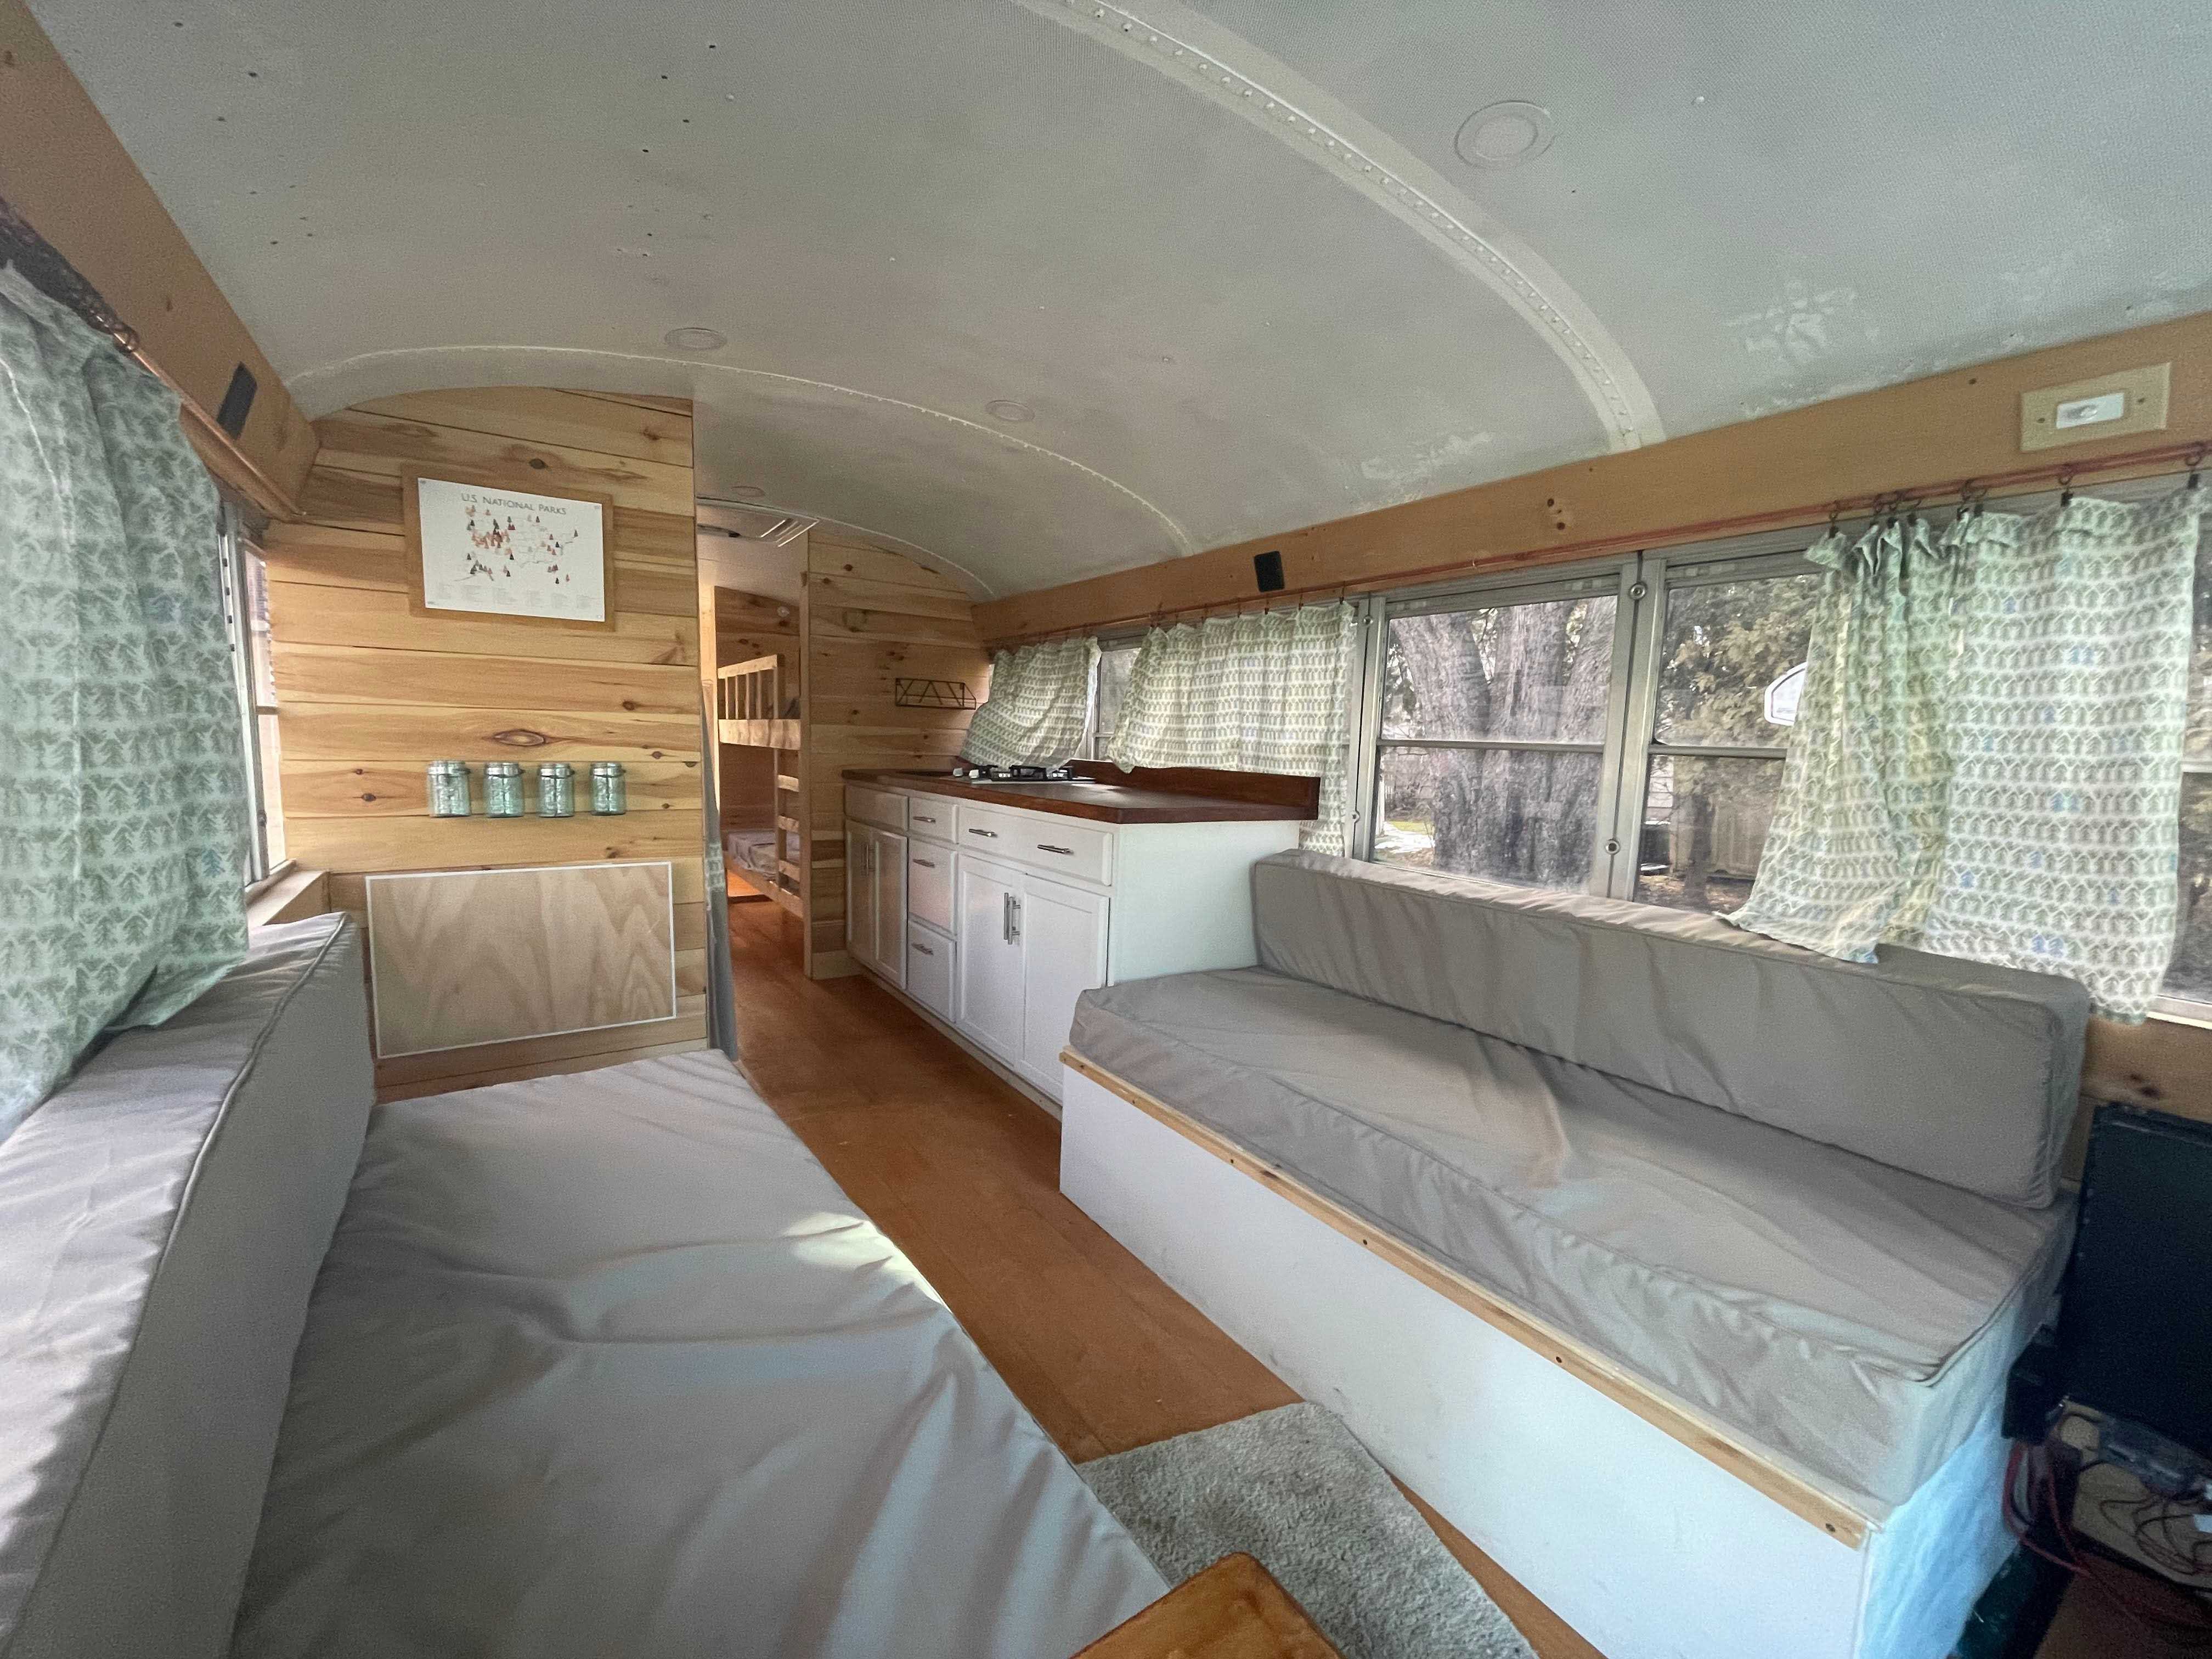 Innenraum eines neu gestalteten Busses mit grauen Sitzen, Holzvertäfelung, grünen Vorhängen und weißer Decke